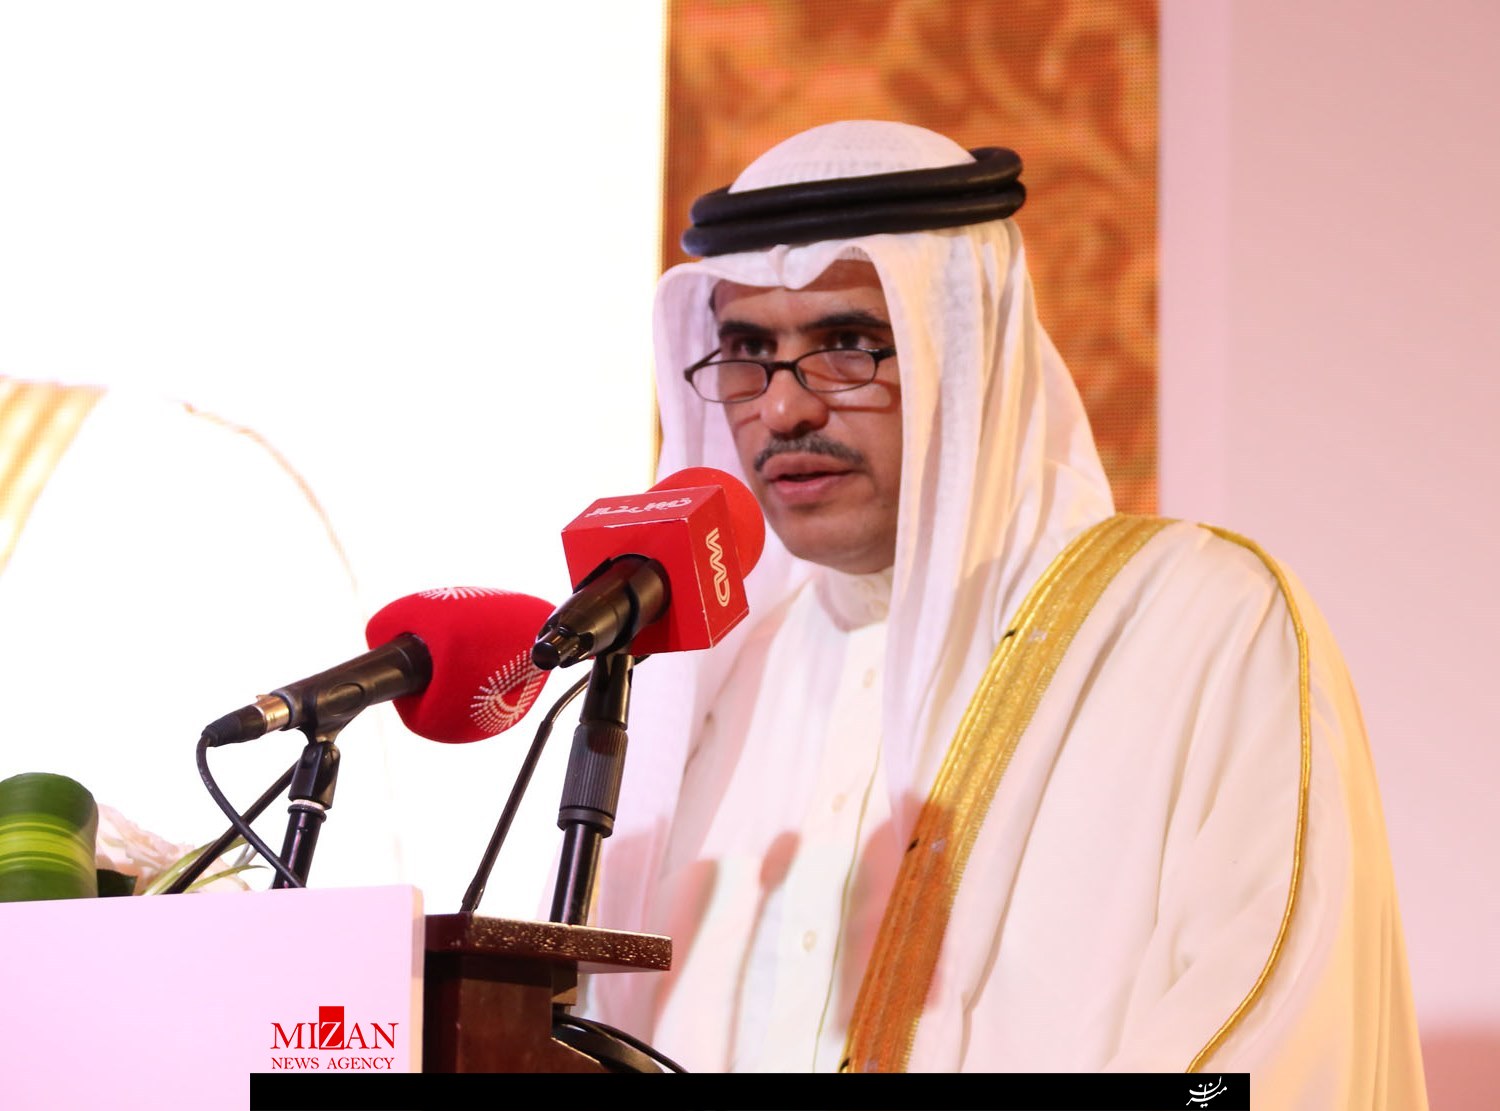 وزیر بحرینی: بازداشت فعالان سیاسی برای حفاظت از امنیت کشور صورت گرفت